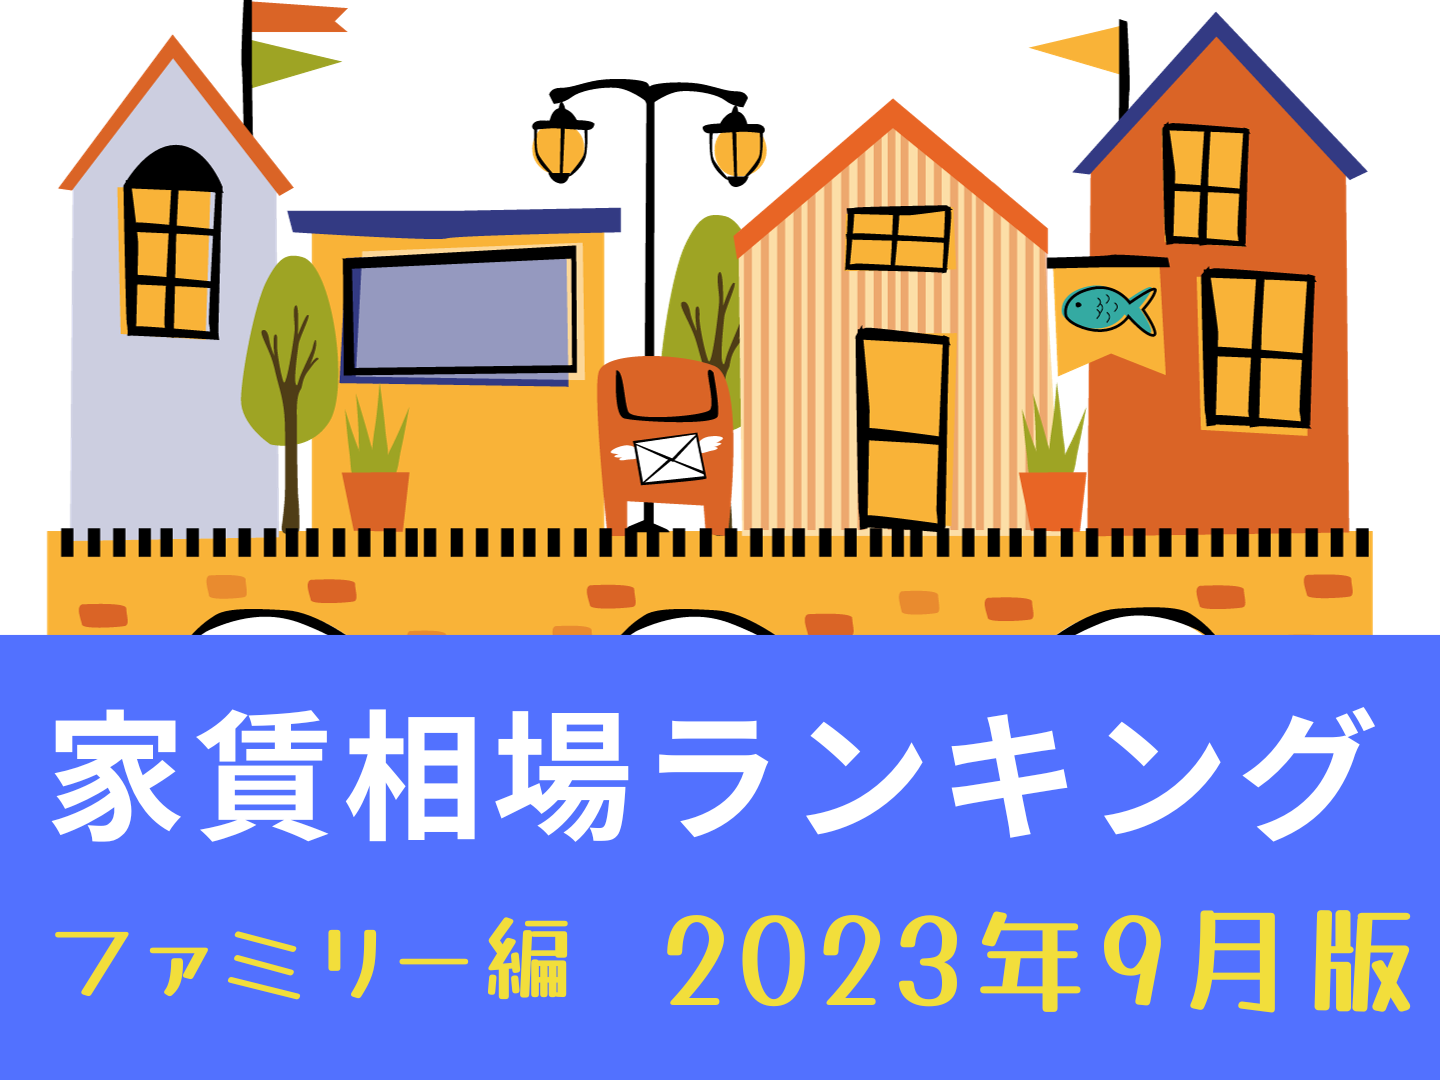 名古屋市家賃が高い街ランキング～ファミリー編～2023年9月版